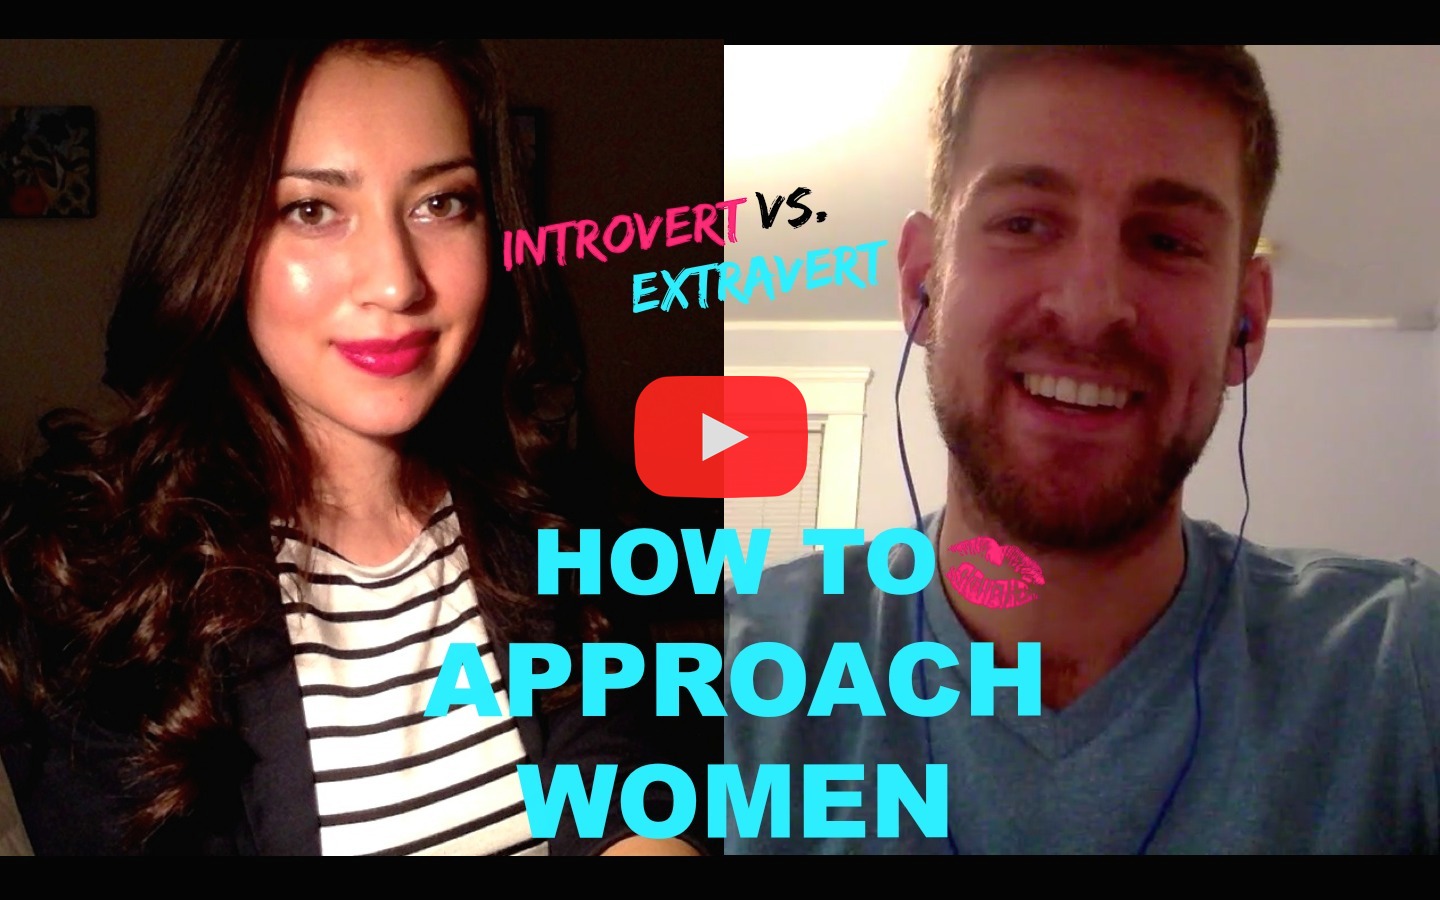 Introvert vs. Extravert: How To Approach Women - Introvert ...